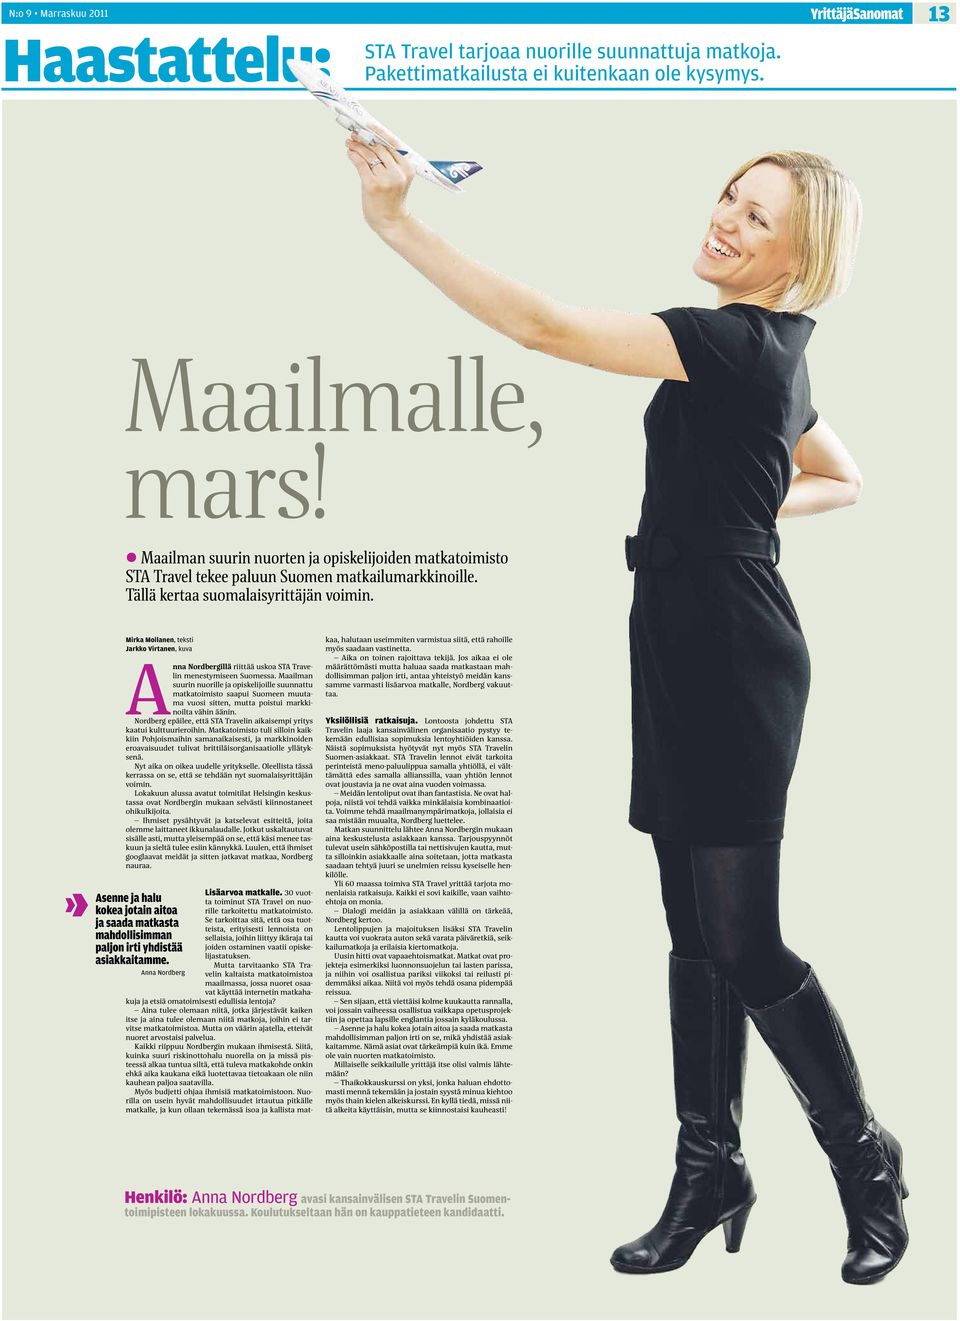 Mirka Moilanen, teksti Jarkko Virtanen, kuva Anna Nordbergillä riittää uskoa STA Travelin menestymiseen Suomessa.